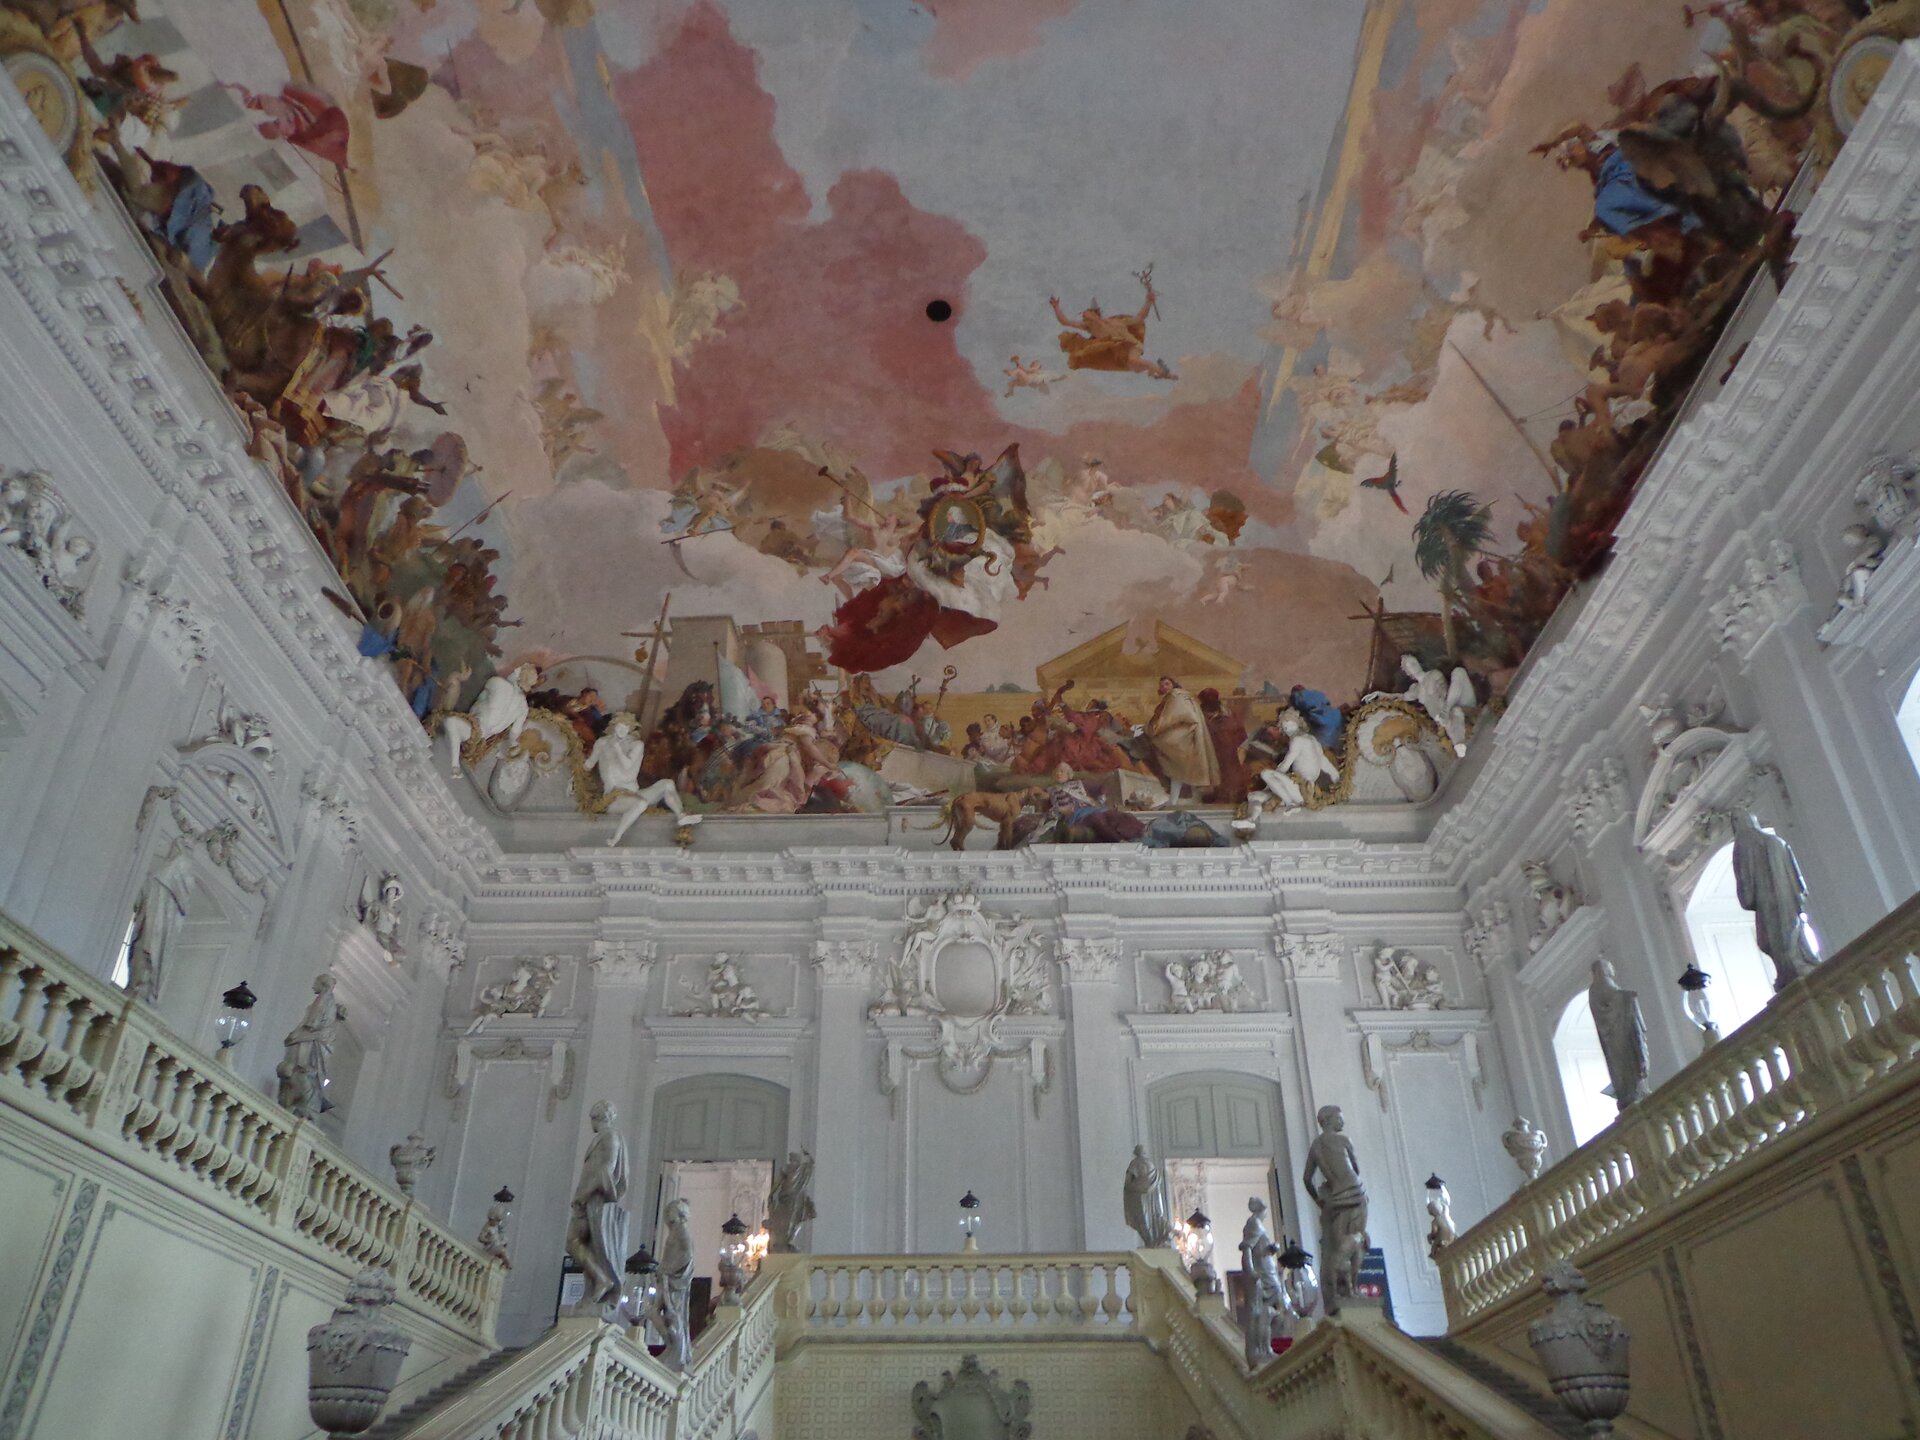 Ilustracja przedstawia główną klatkę schodową we wnętrzu rezydencji w Würzburgu, której projektantem był Balthasar Neumann. Schody umieszczone są po obu stronach sali. Ściany są bogato zdobione białymi, stiukowymi dekoracjami. Nad schodami znajduje się największe na świecie malowidło plafonowe, fresk „Alegoria planet i kontynentów", autorstwa włoskiego malarza Giovanniego Battisty Tiepolo.